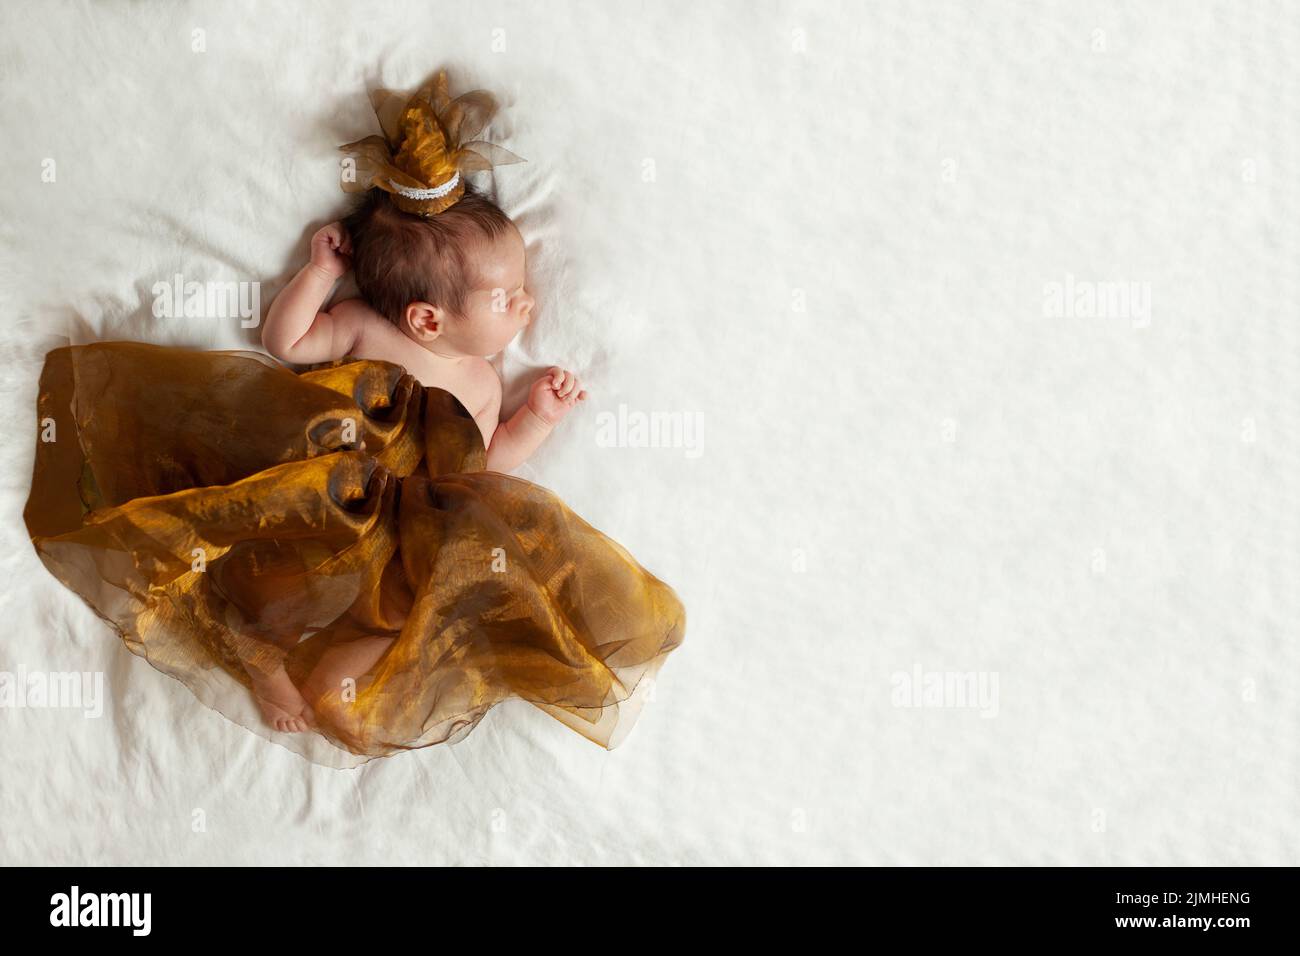 Adorable bebé princesa recién nacido en un pequeño vestido dorado sobre manta blanca Foto de stock